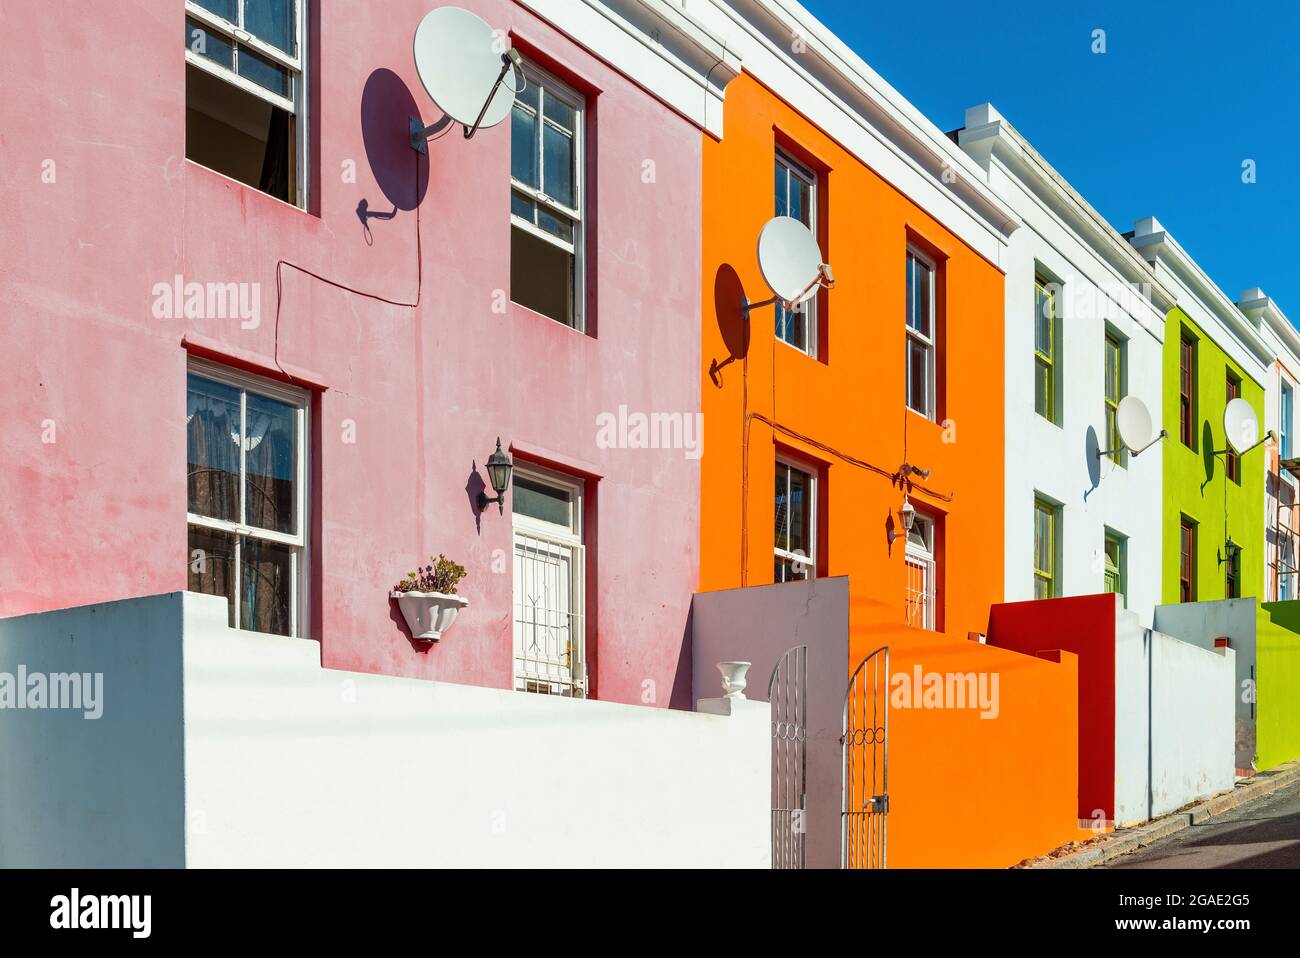 Bo Kaap malay distrito colorida arquitectura, Ciudad del Cabo, Sudáfrica. Foto de stock